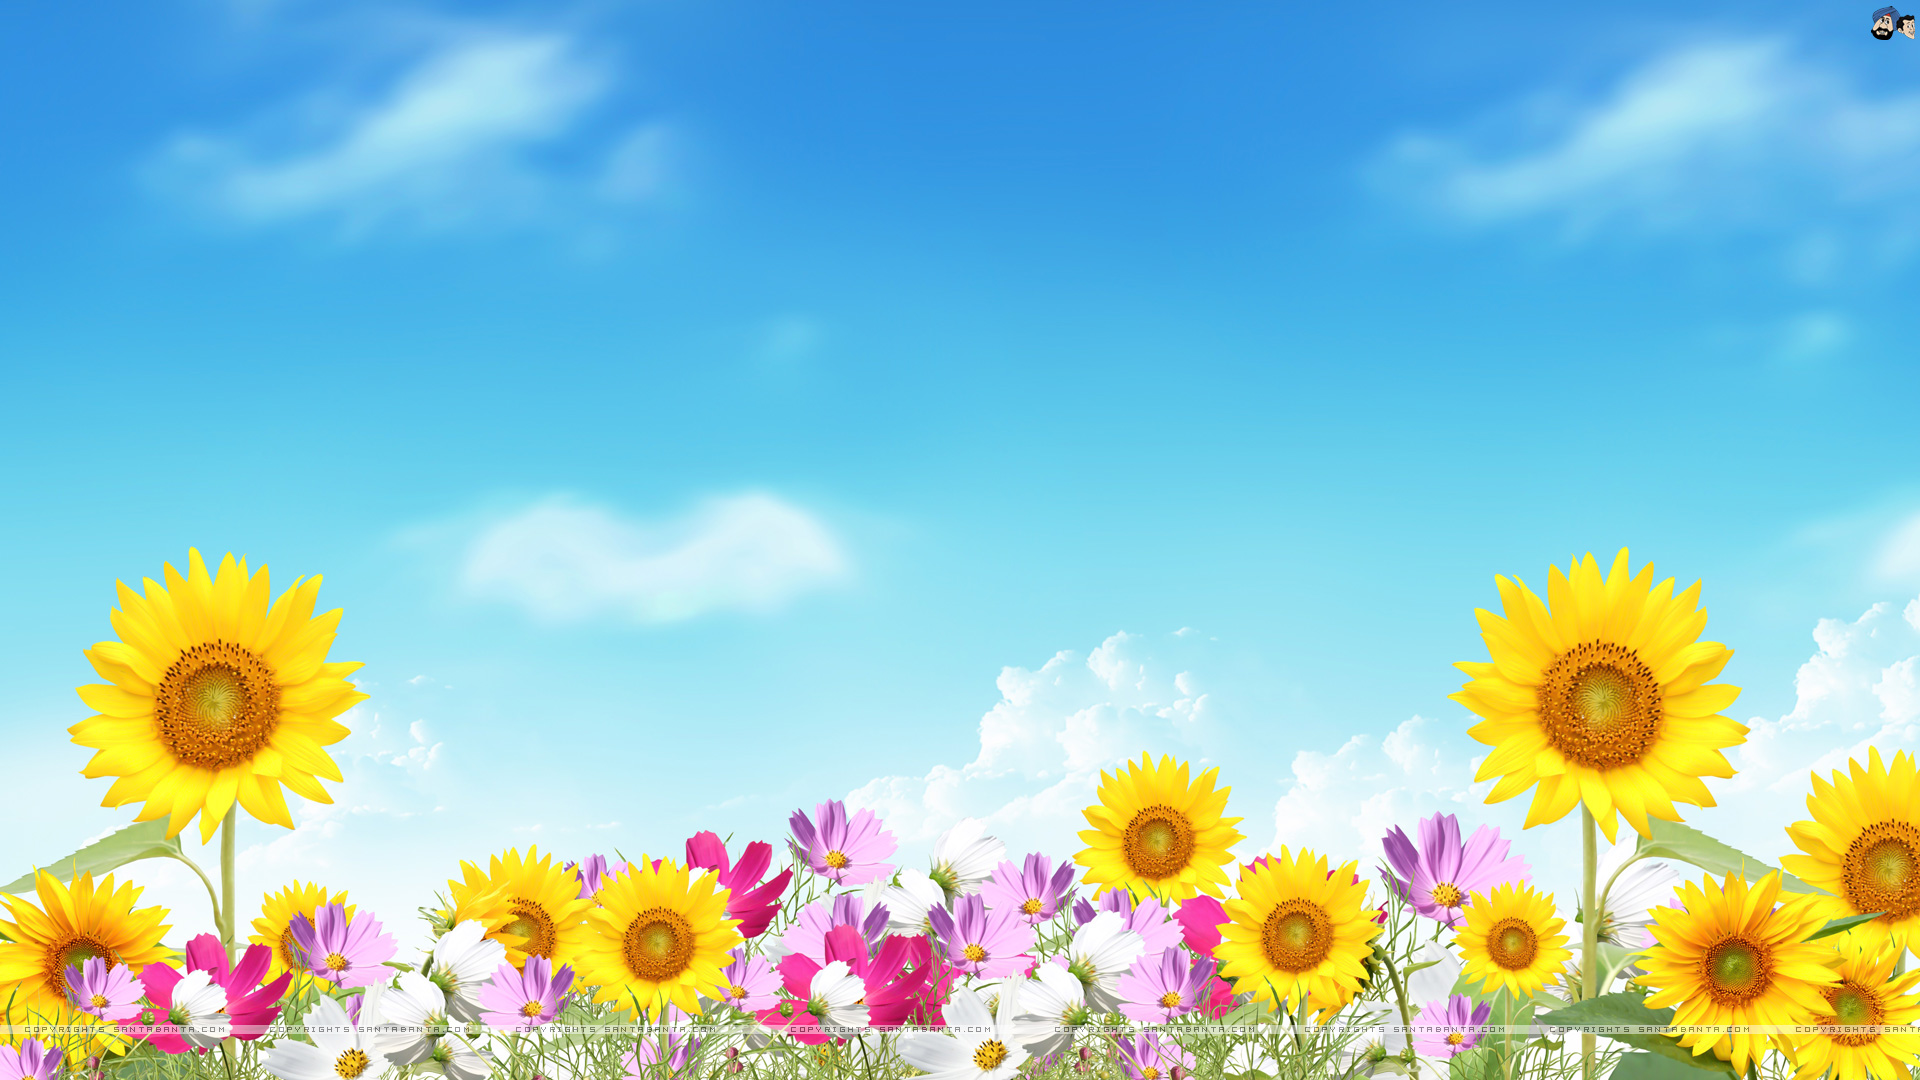 Summer flowers wallpaper